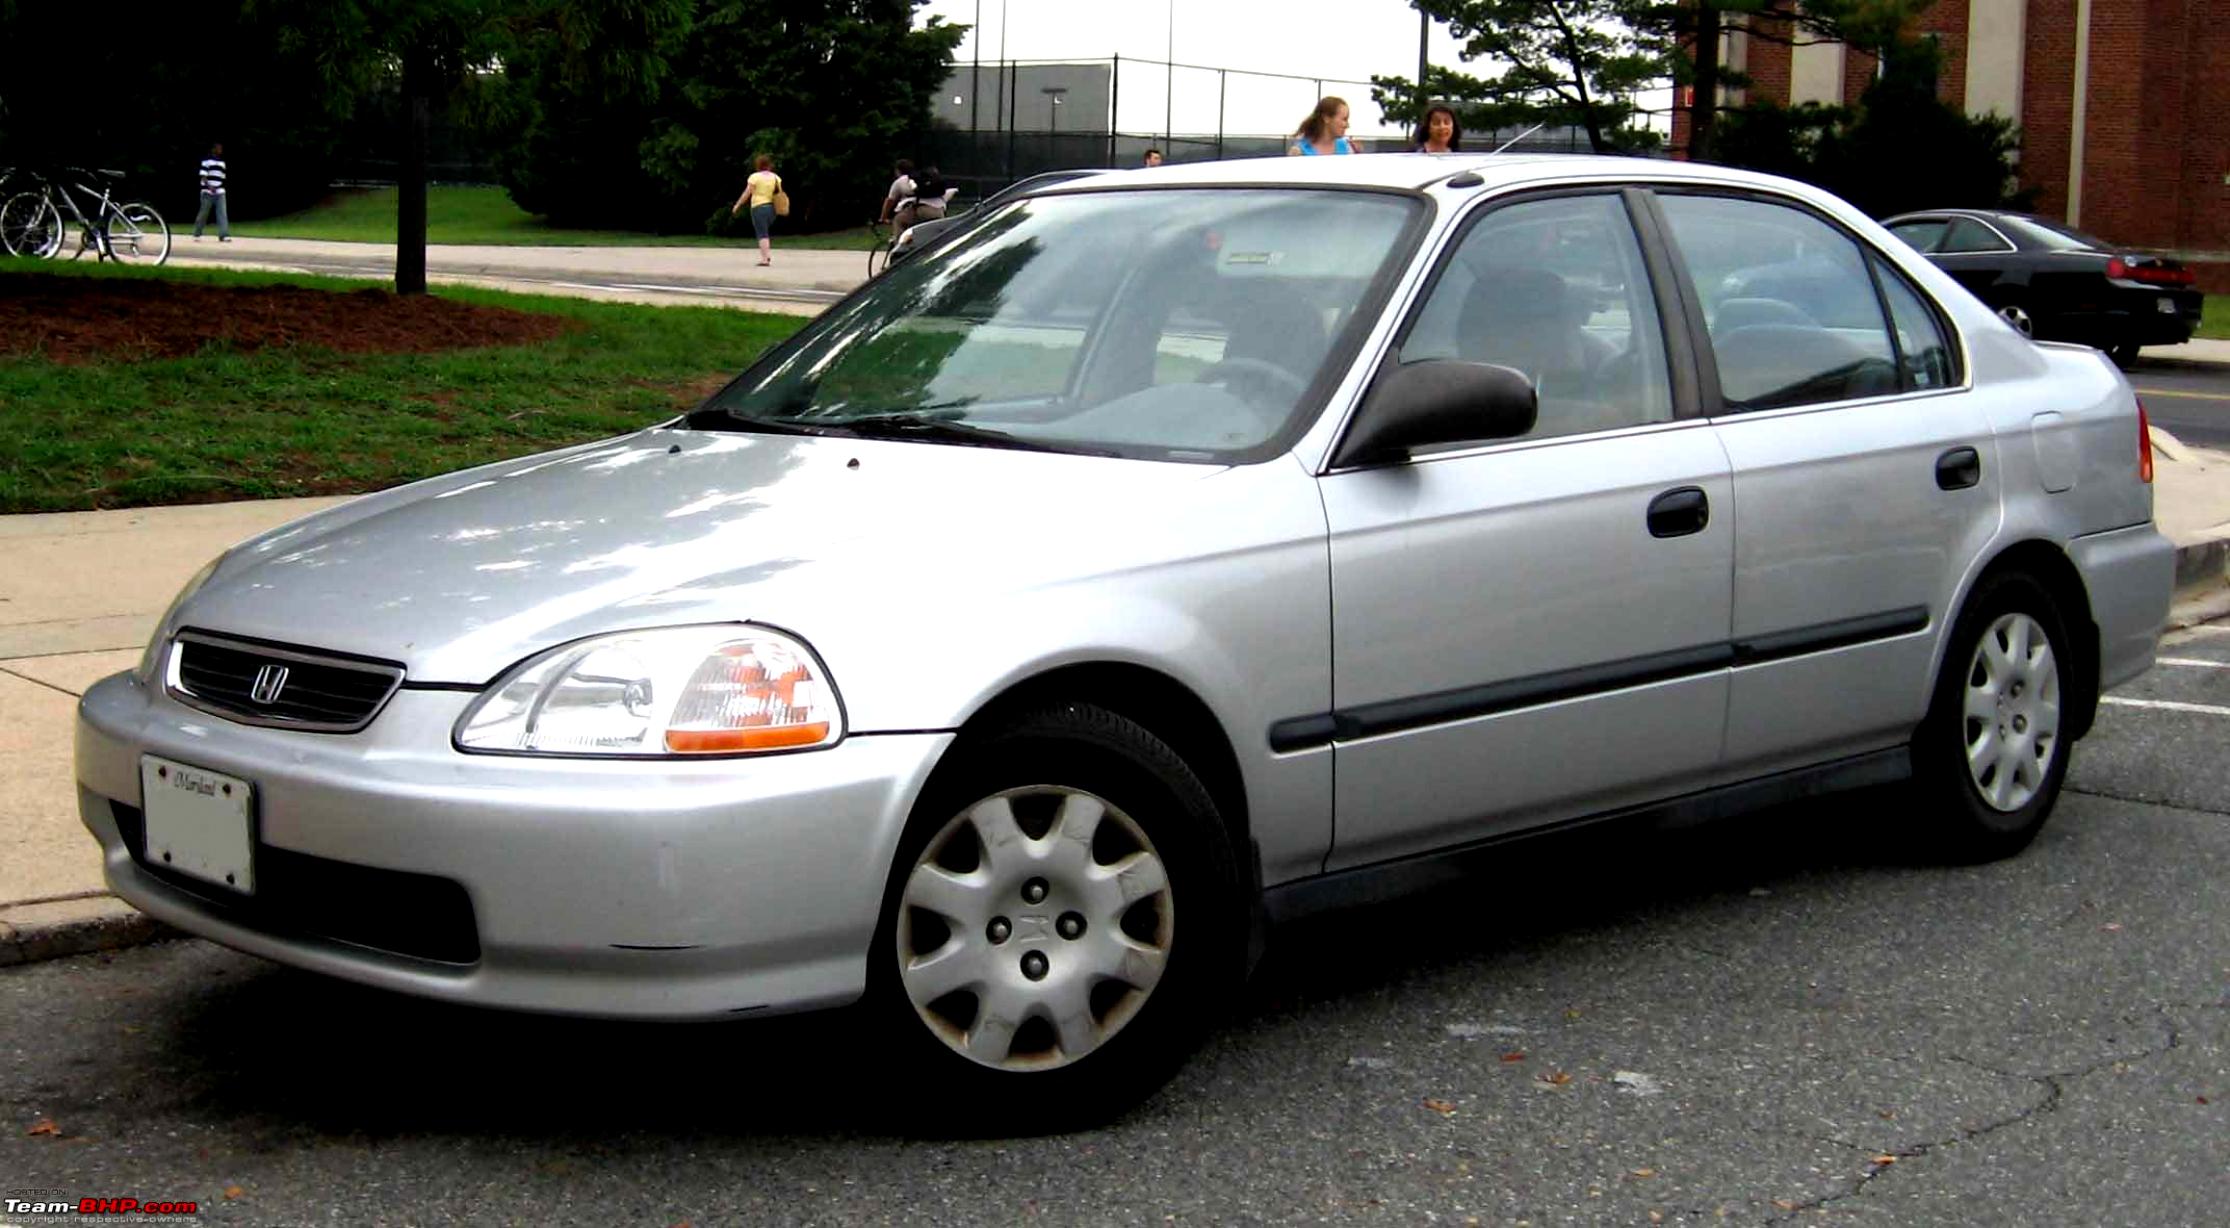 Цивик 98 года. Honda Civic 1998. Honda Civic 1998 седан. Honda Civic 98 седан. Хонда Цивик 1998 седан.